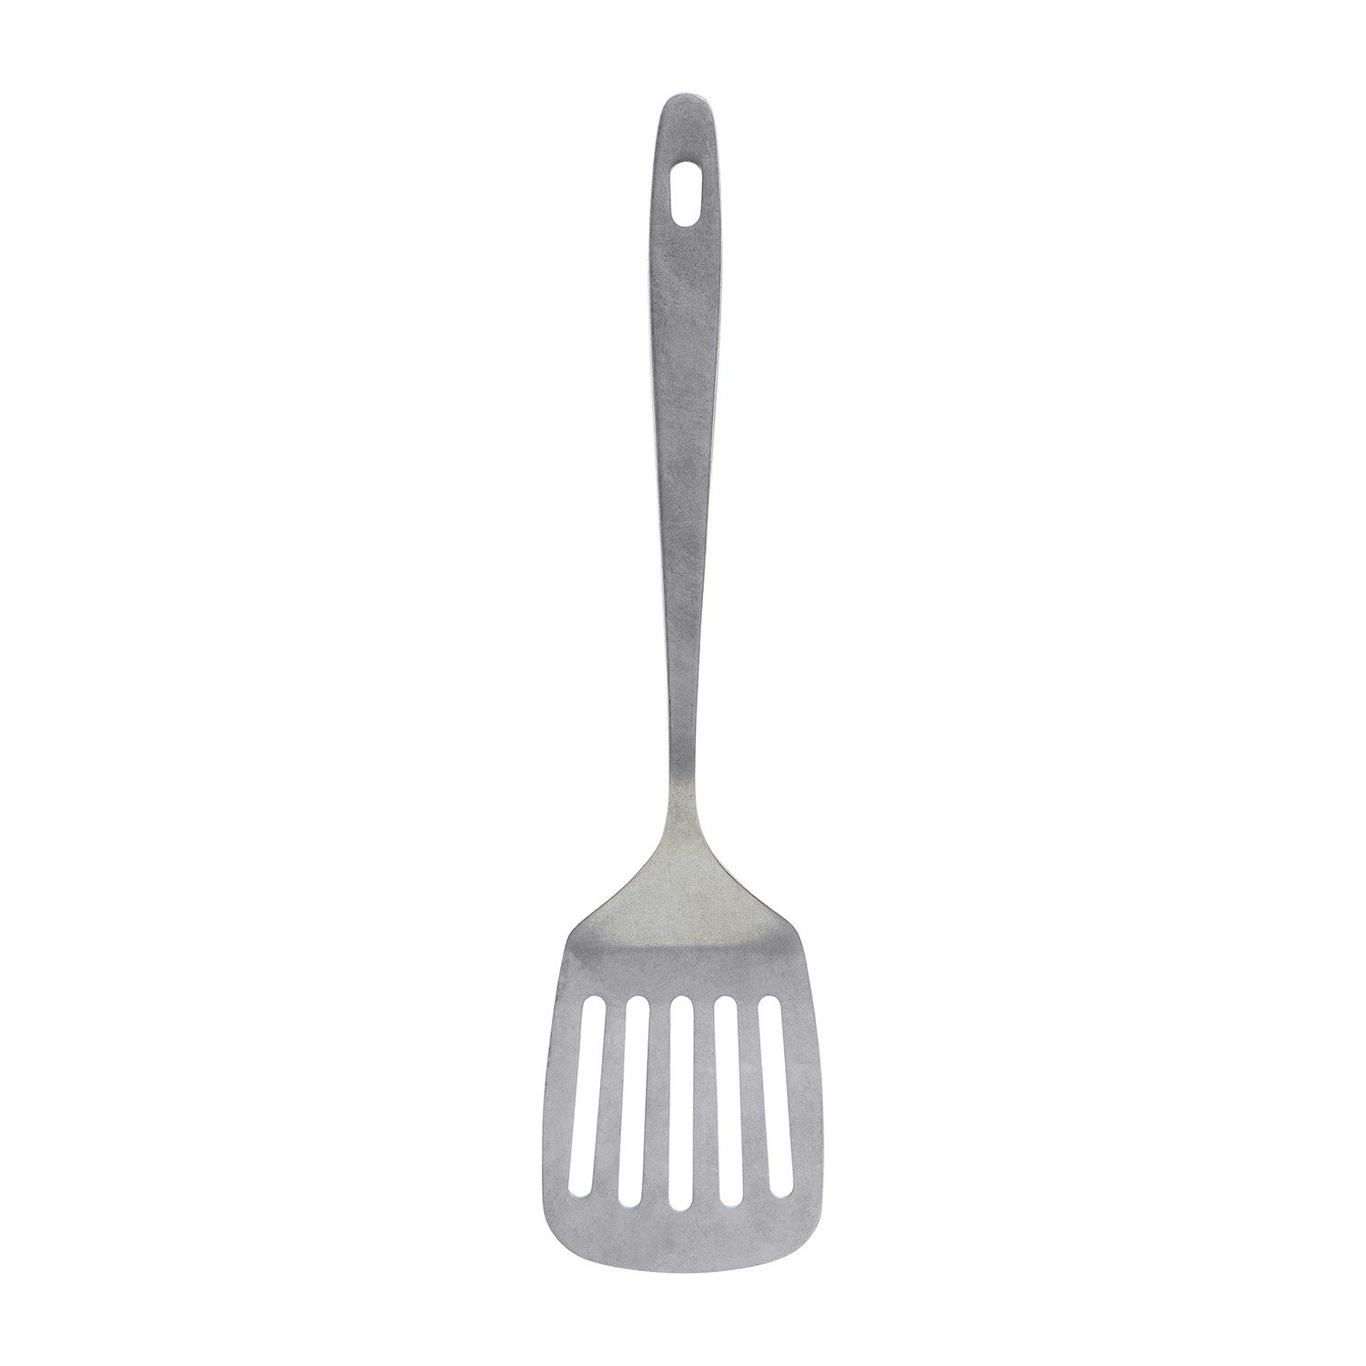 https://royaldesign.com/image/2/nicolas-vahe-spatula-daily-0?w=800&quality=80